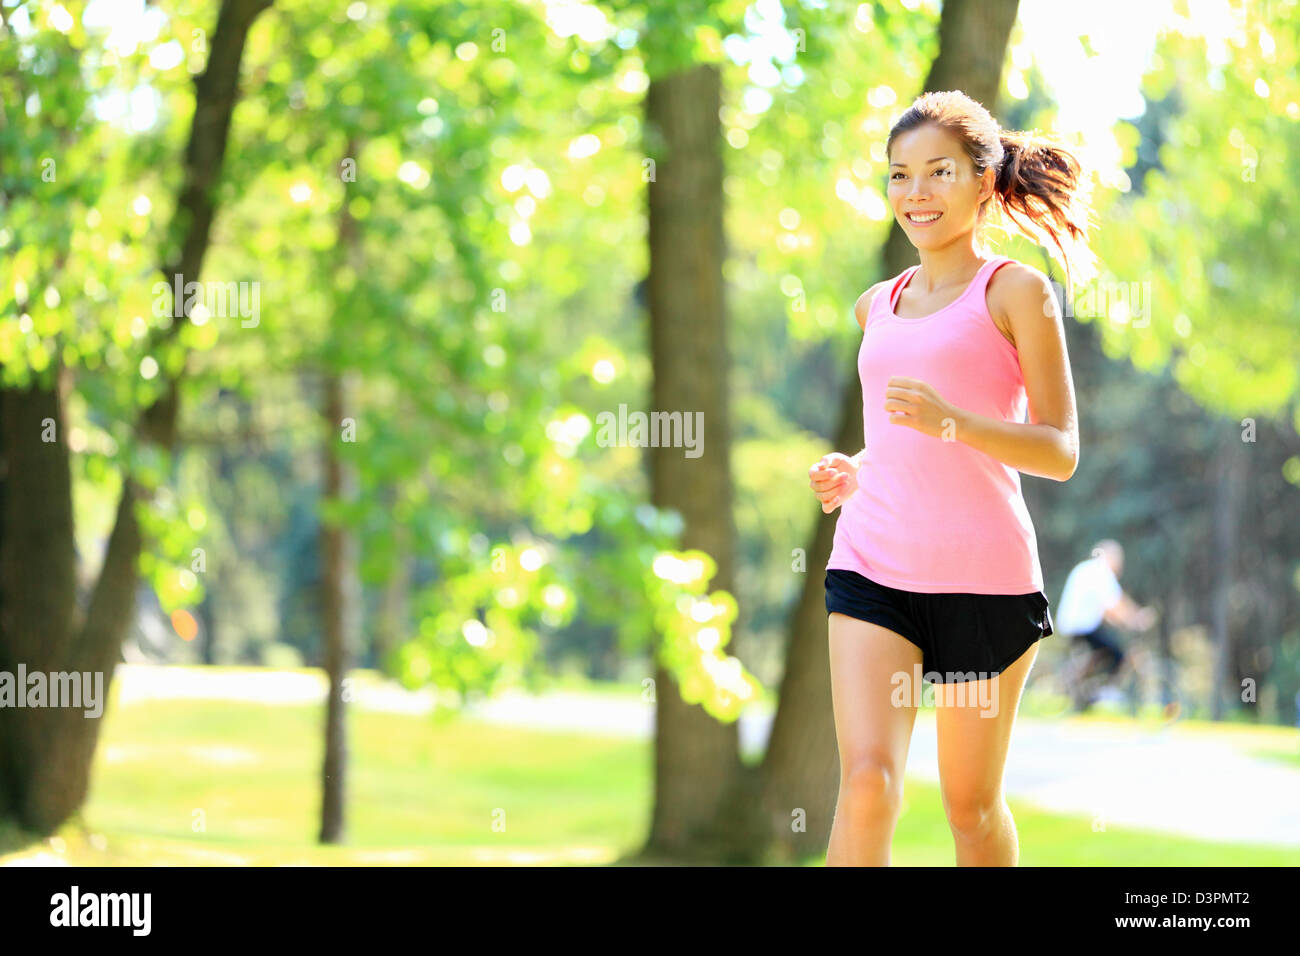 Happy Asian / Caucasian woman running in Park City aux beaux jours avec du soleil dans les arbres verts Banque D'Images